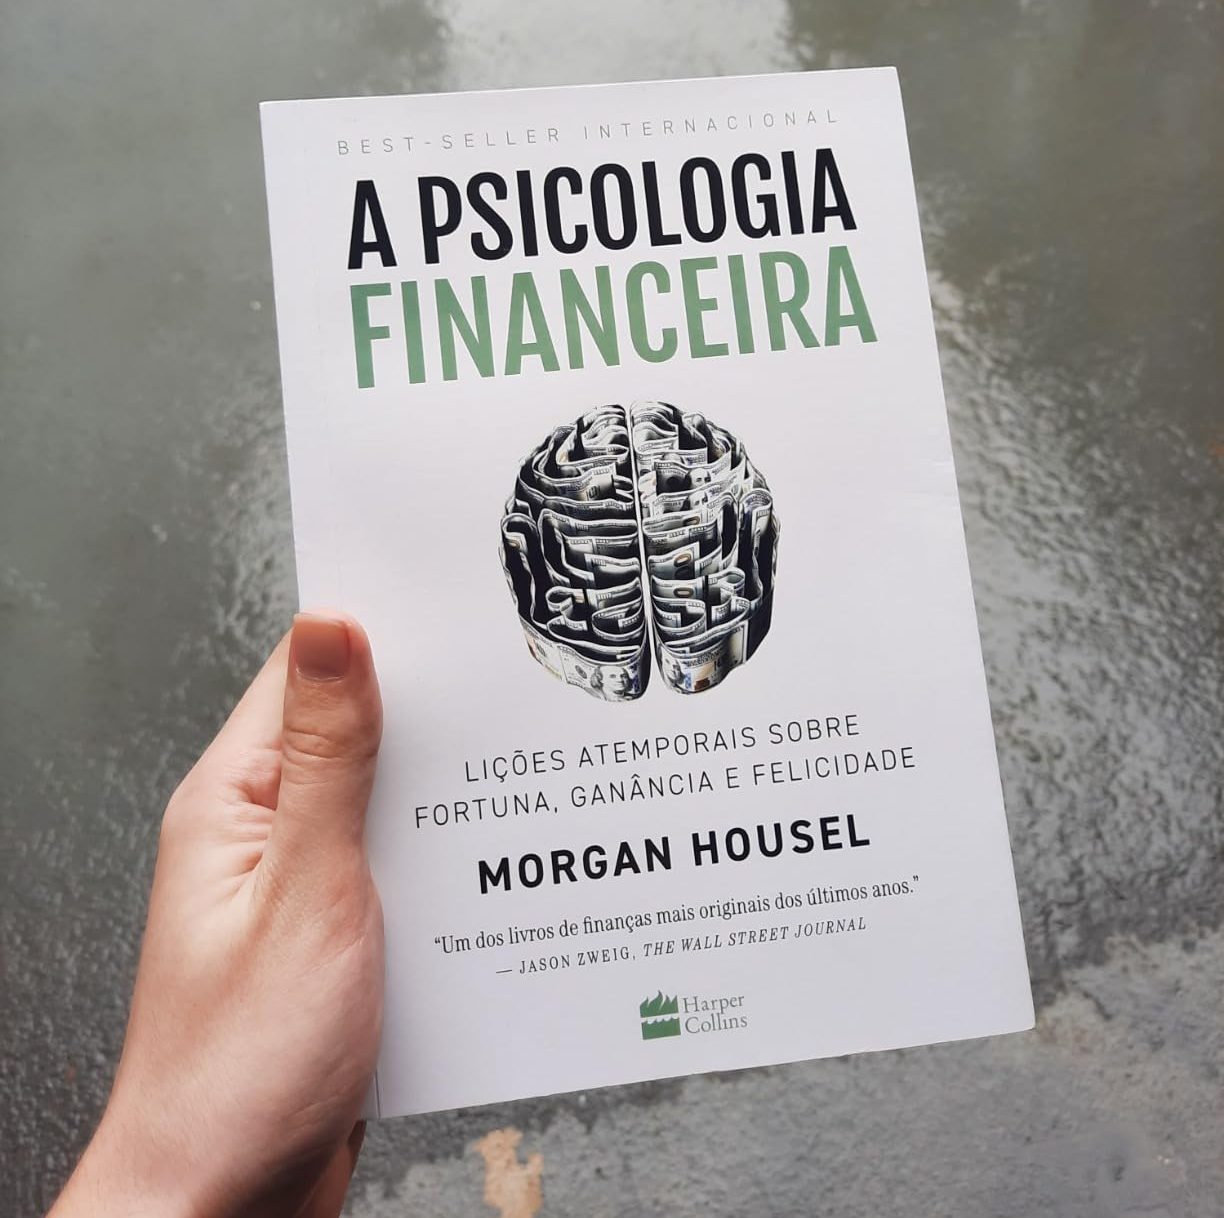 A Psicologia Financeira: lições atemporais sobre fortuna, ganância e felicidade - Morgan Housel